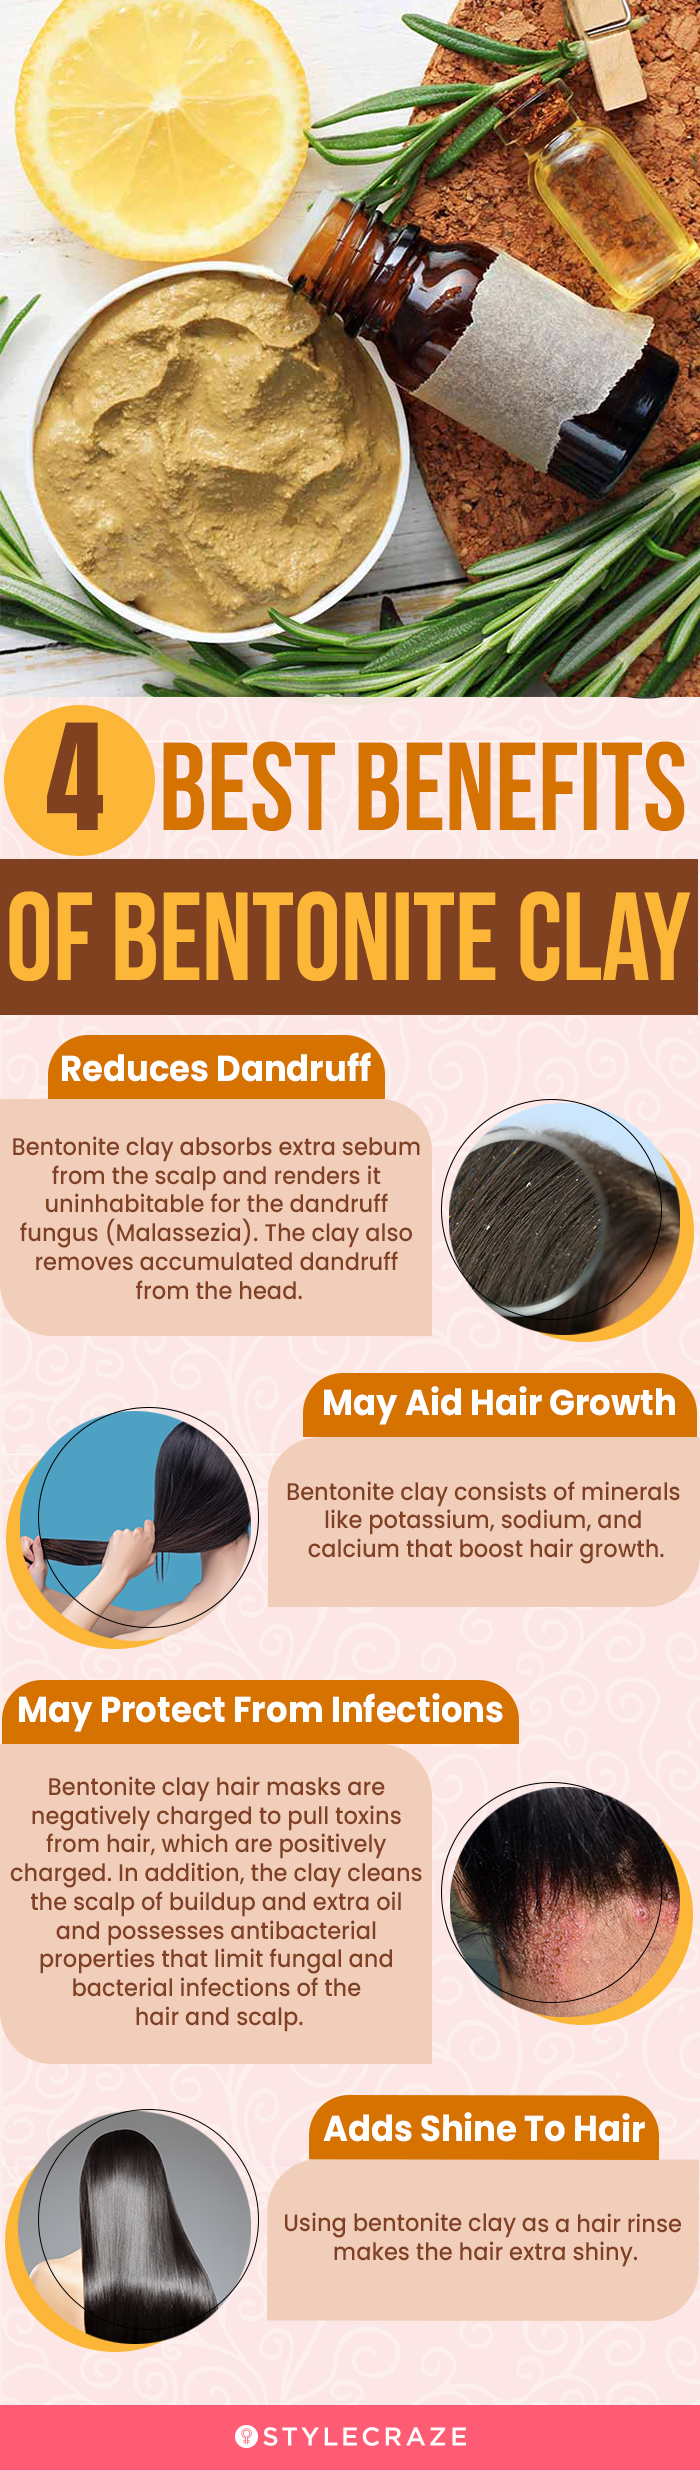 4 best benefits of bentonite clay (infographic)